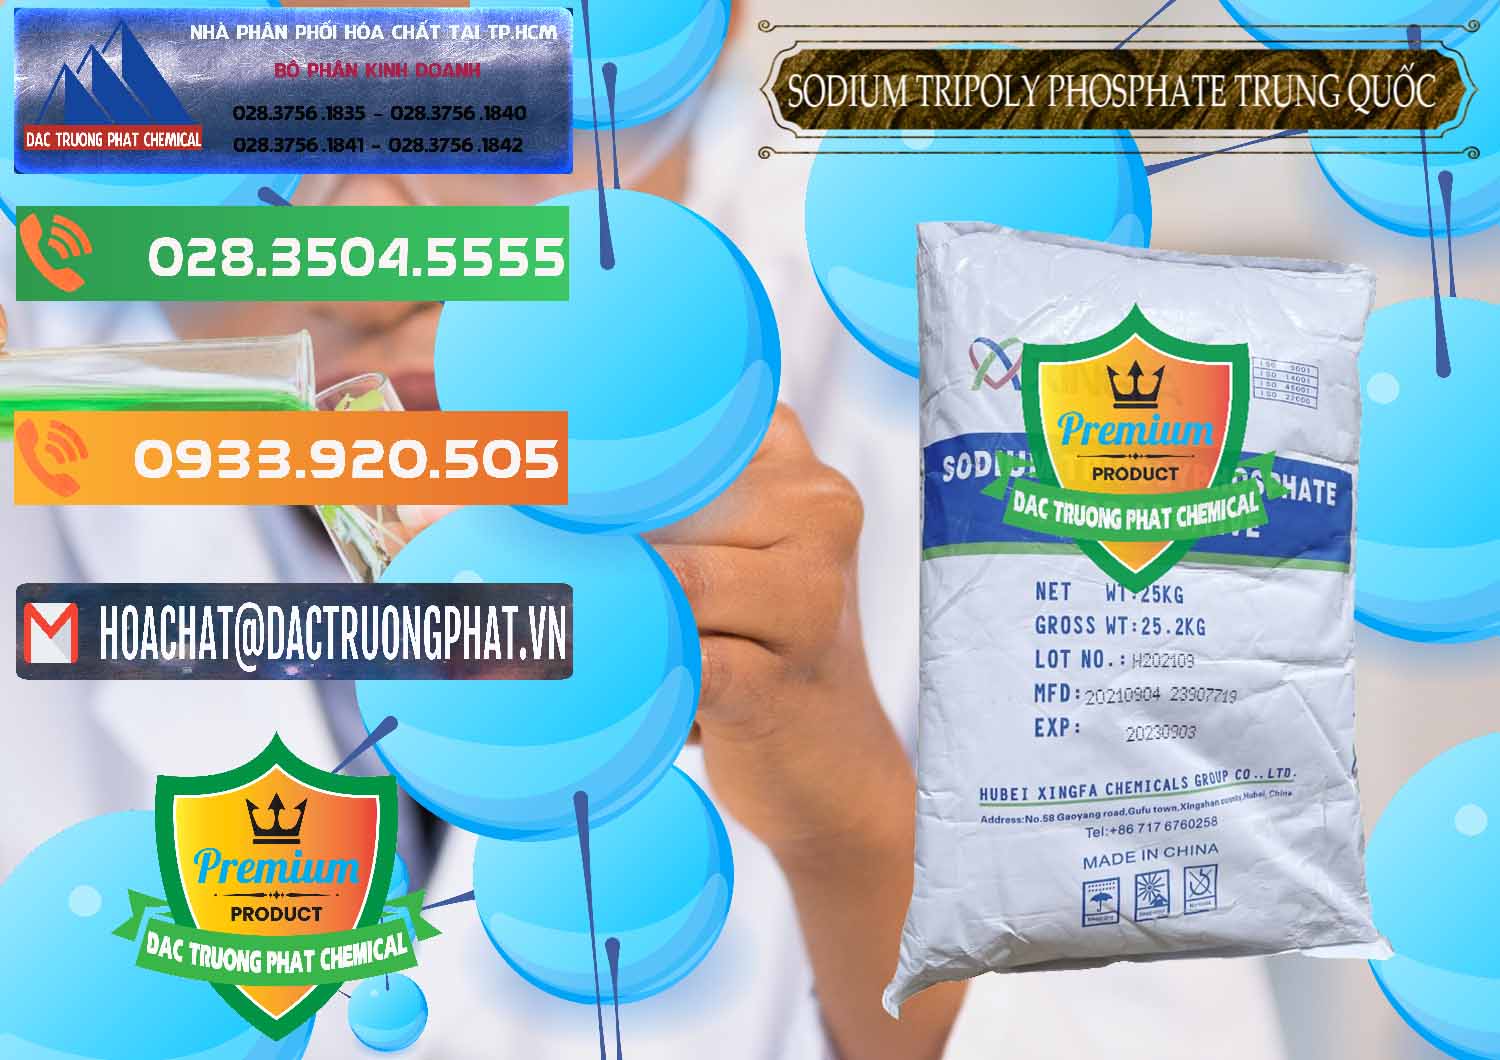 Công ty chuyên kinh doanh ( bán ) Sodium Tripoly Phosphate - STPP 96% Xingfa Trung Quốc China - 0433 - Nơi phân phối _ cung cấp hóa chất tại TP.HCM - hoachatxulynuoc.com.vn